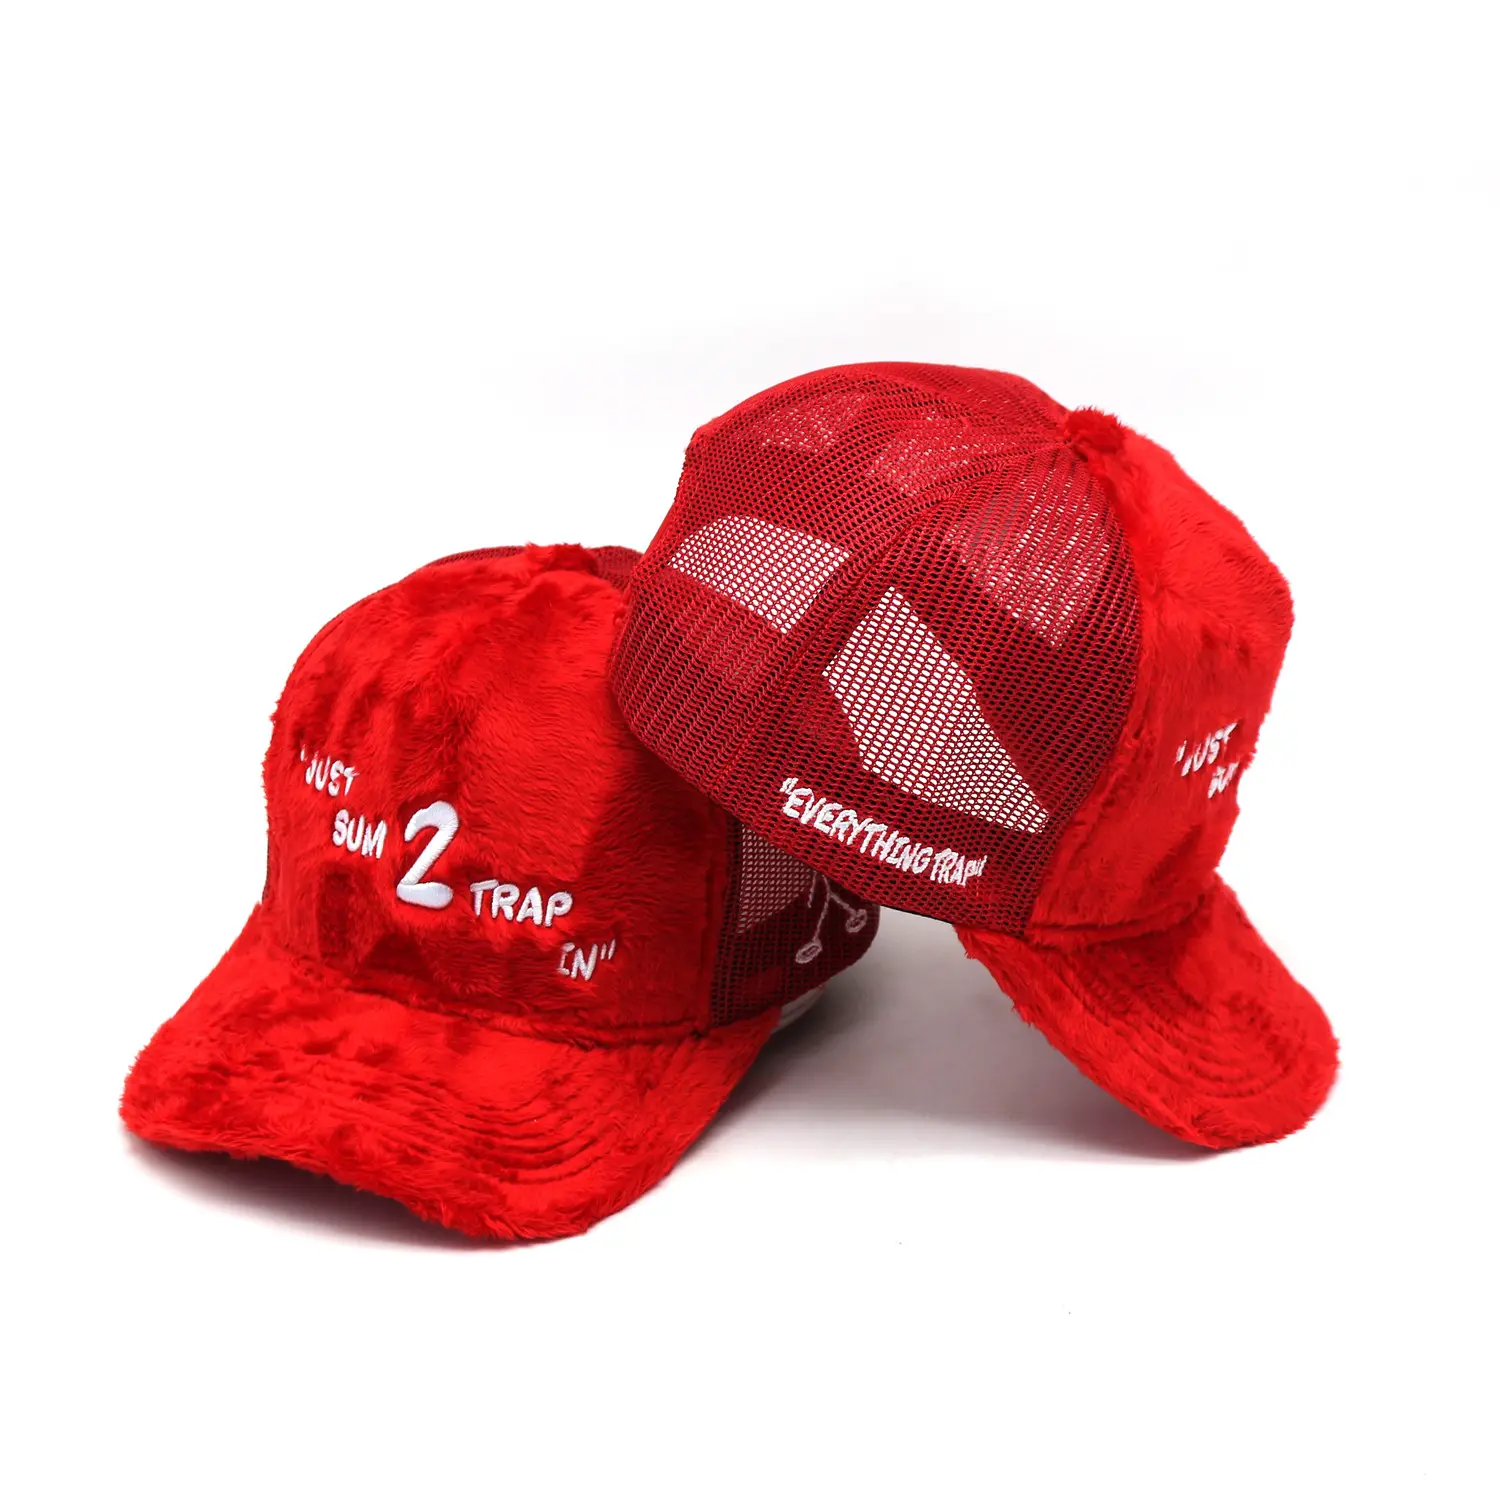 Fashion custom embroidery logo velvet mesh baseball trucker cap hat with net